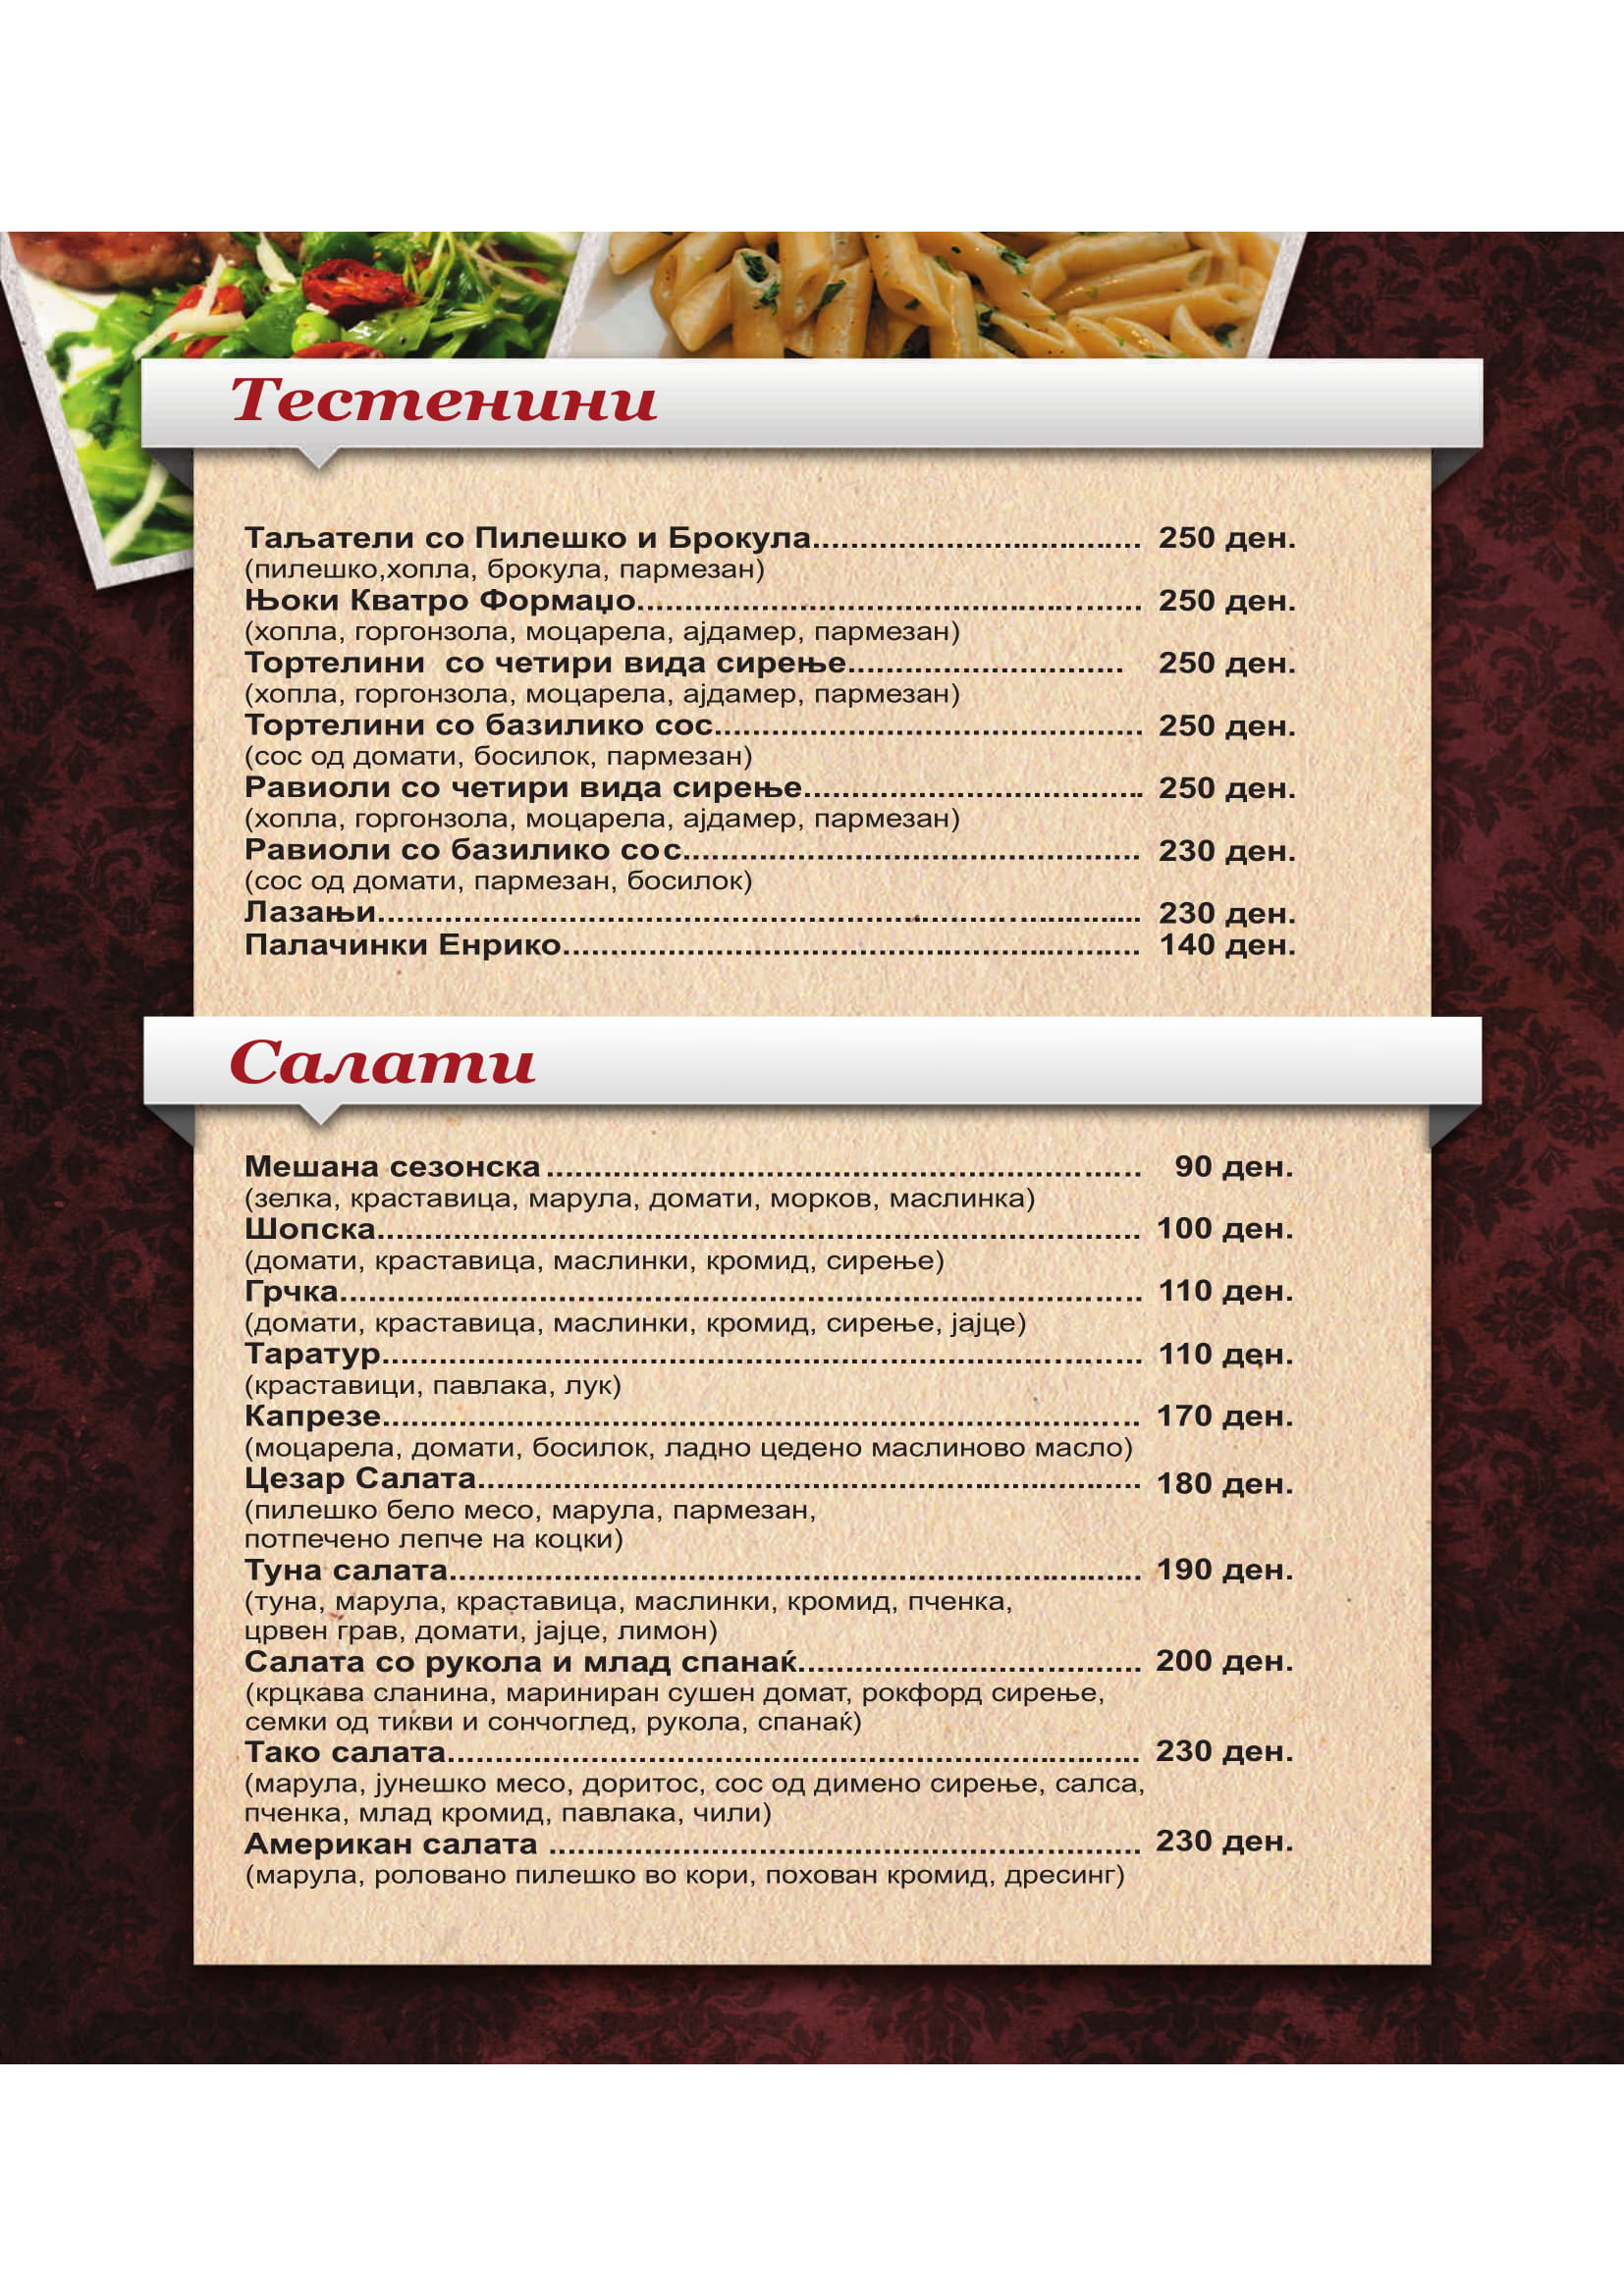 Ресторан Помодоро menu